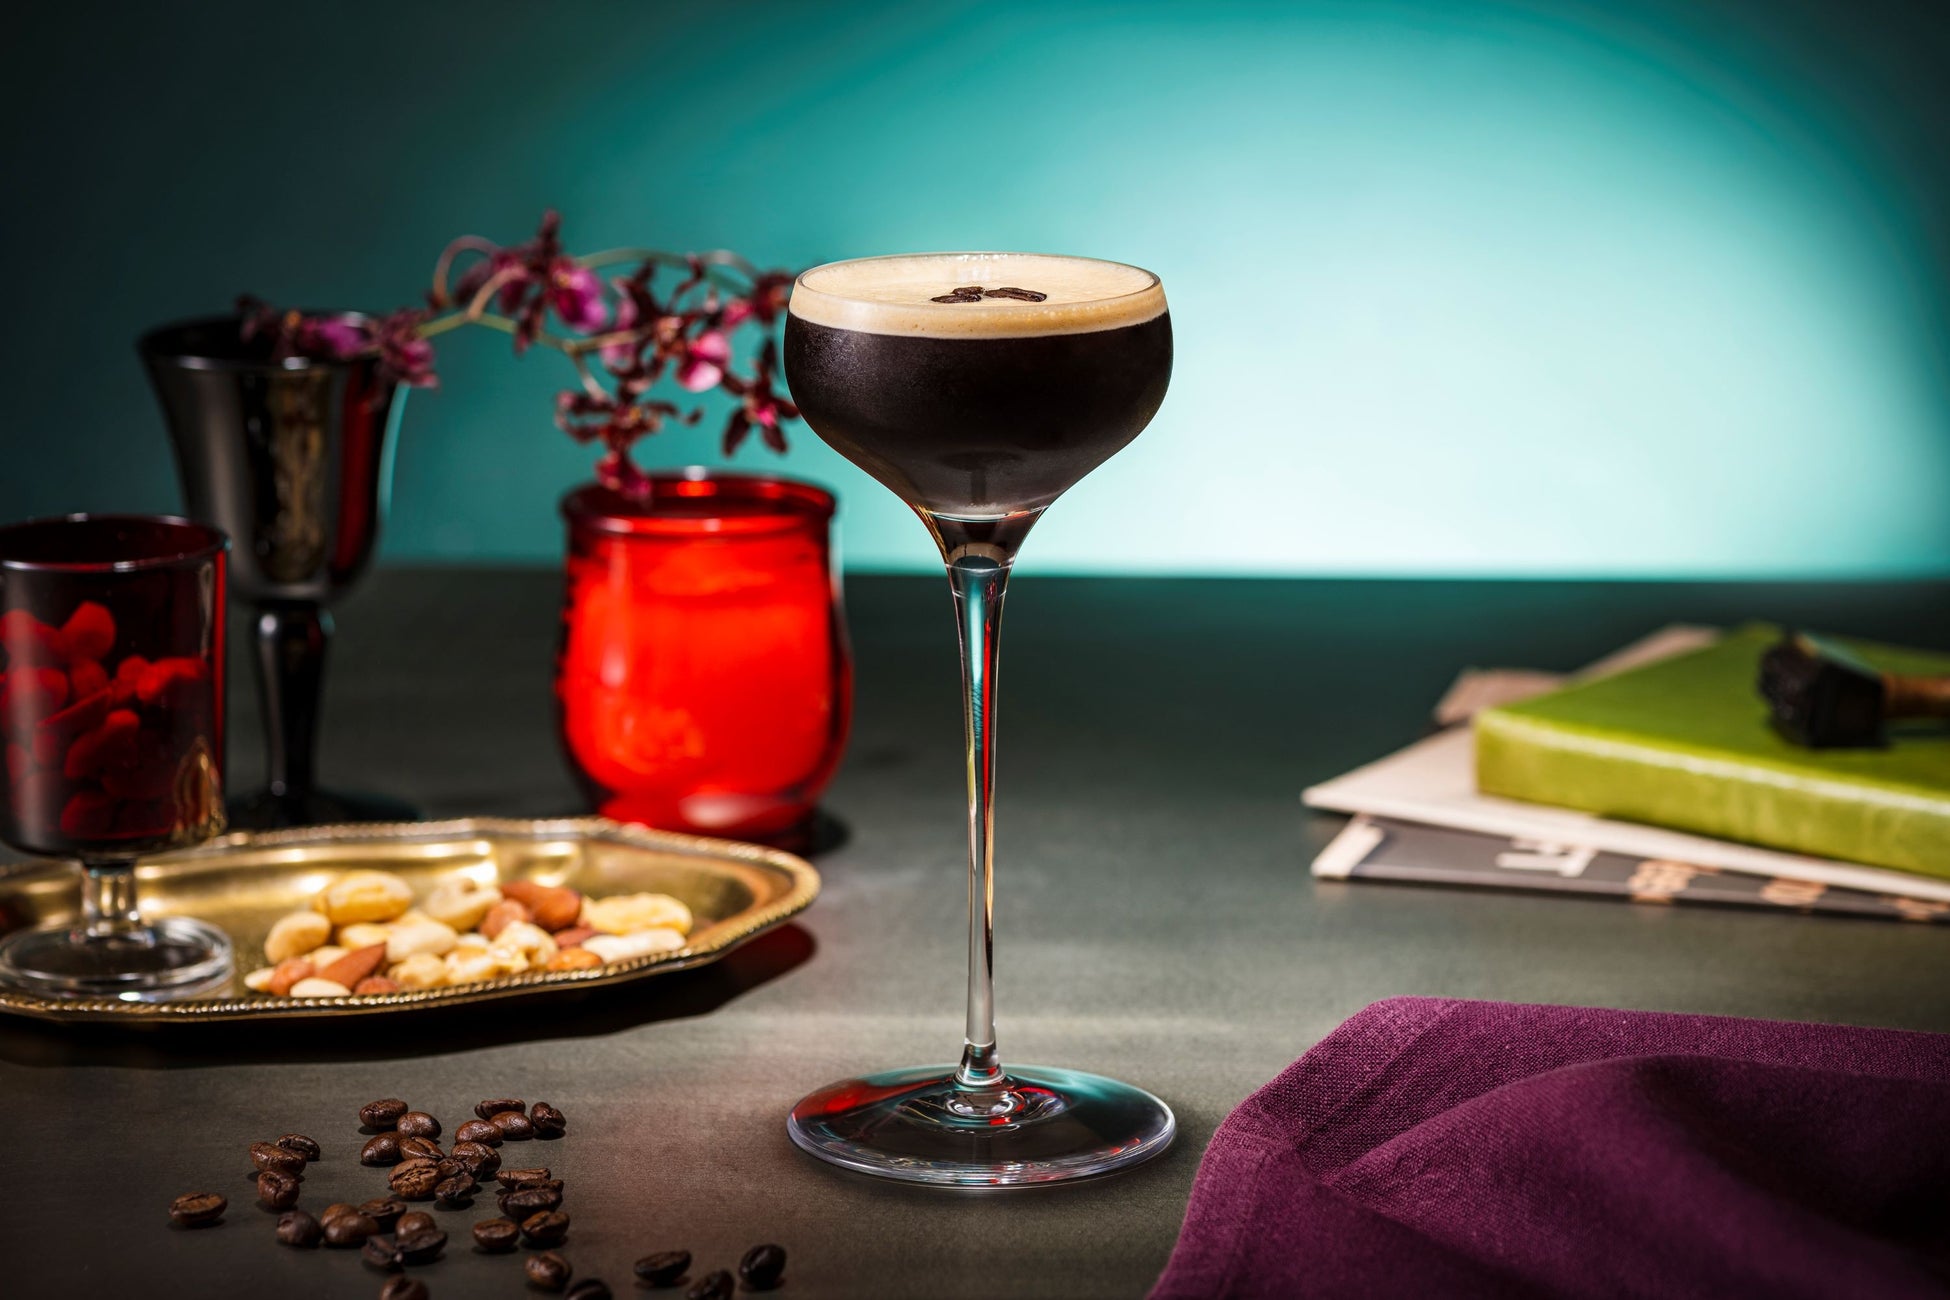 日本初上陸のベネズエラ産コーヒー豆のエスプレッソを贅沢に使用　コーヒーの深い香りと泡盛の芳醇な味わいが織りなす至極のマティーニ　“VEN Espresso Martini”